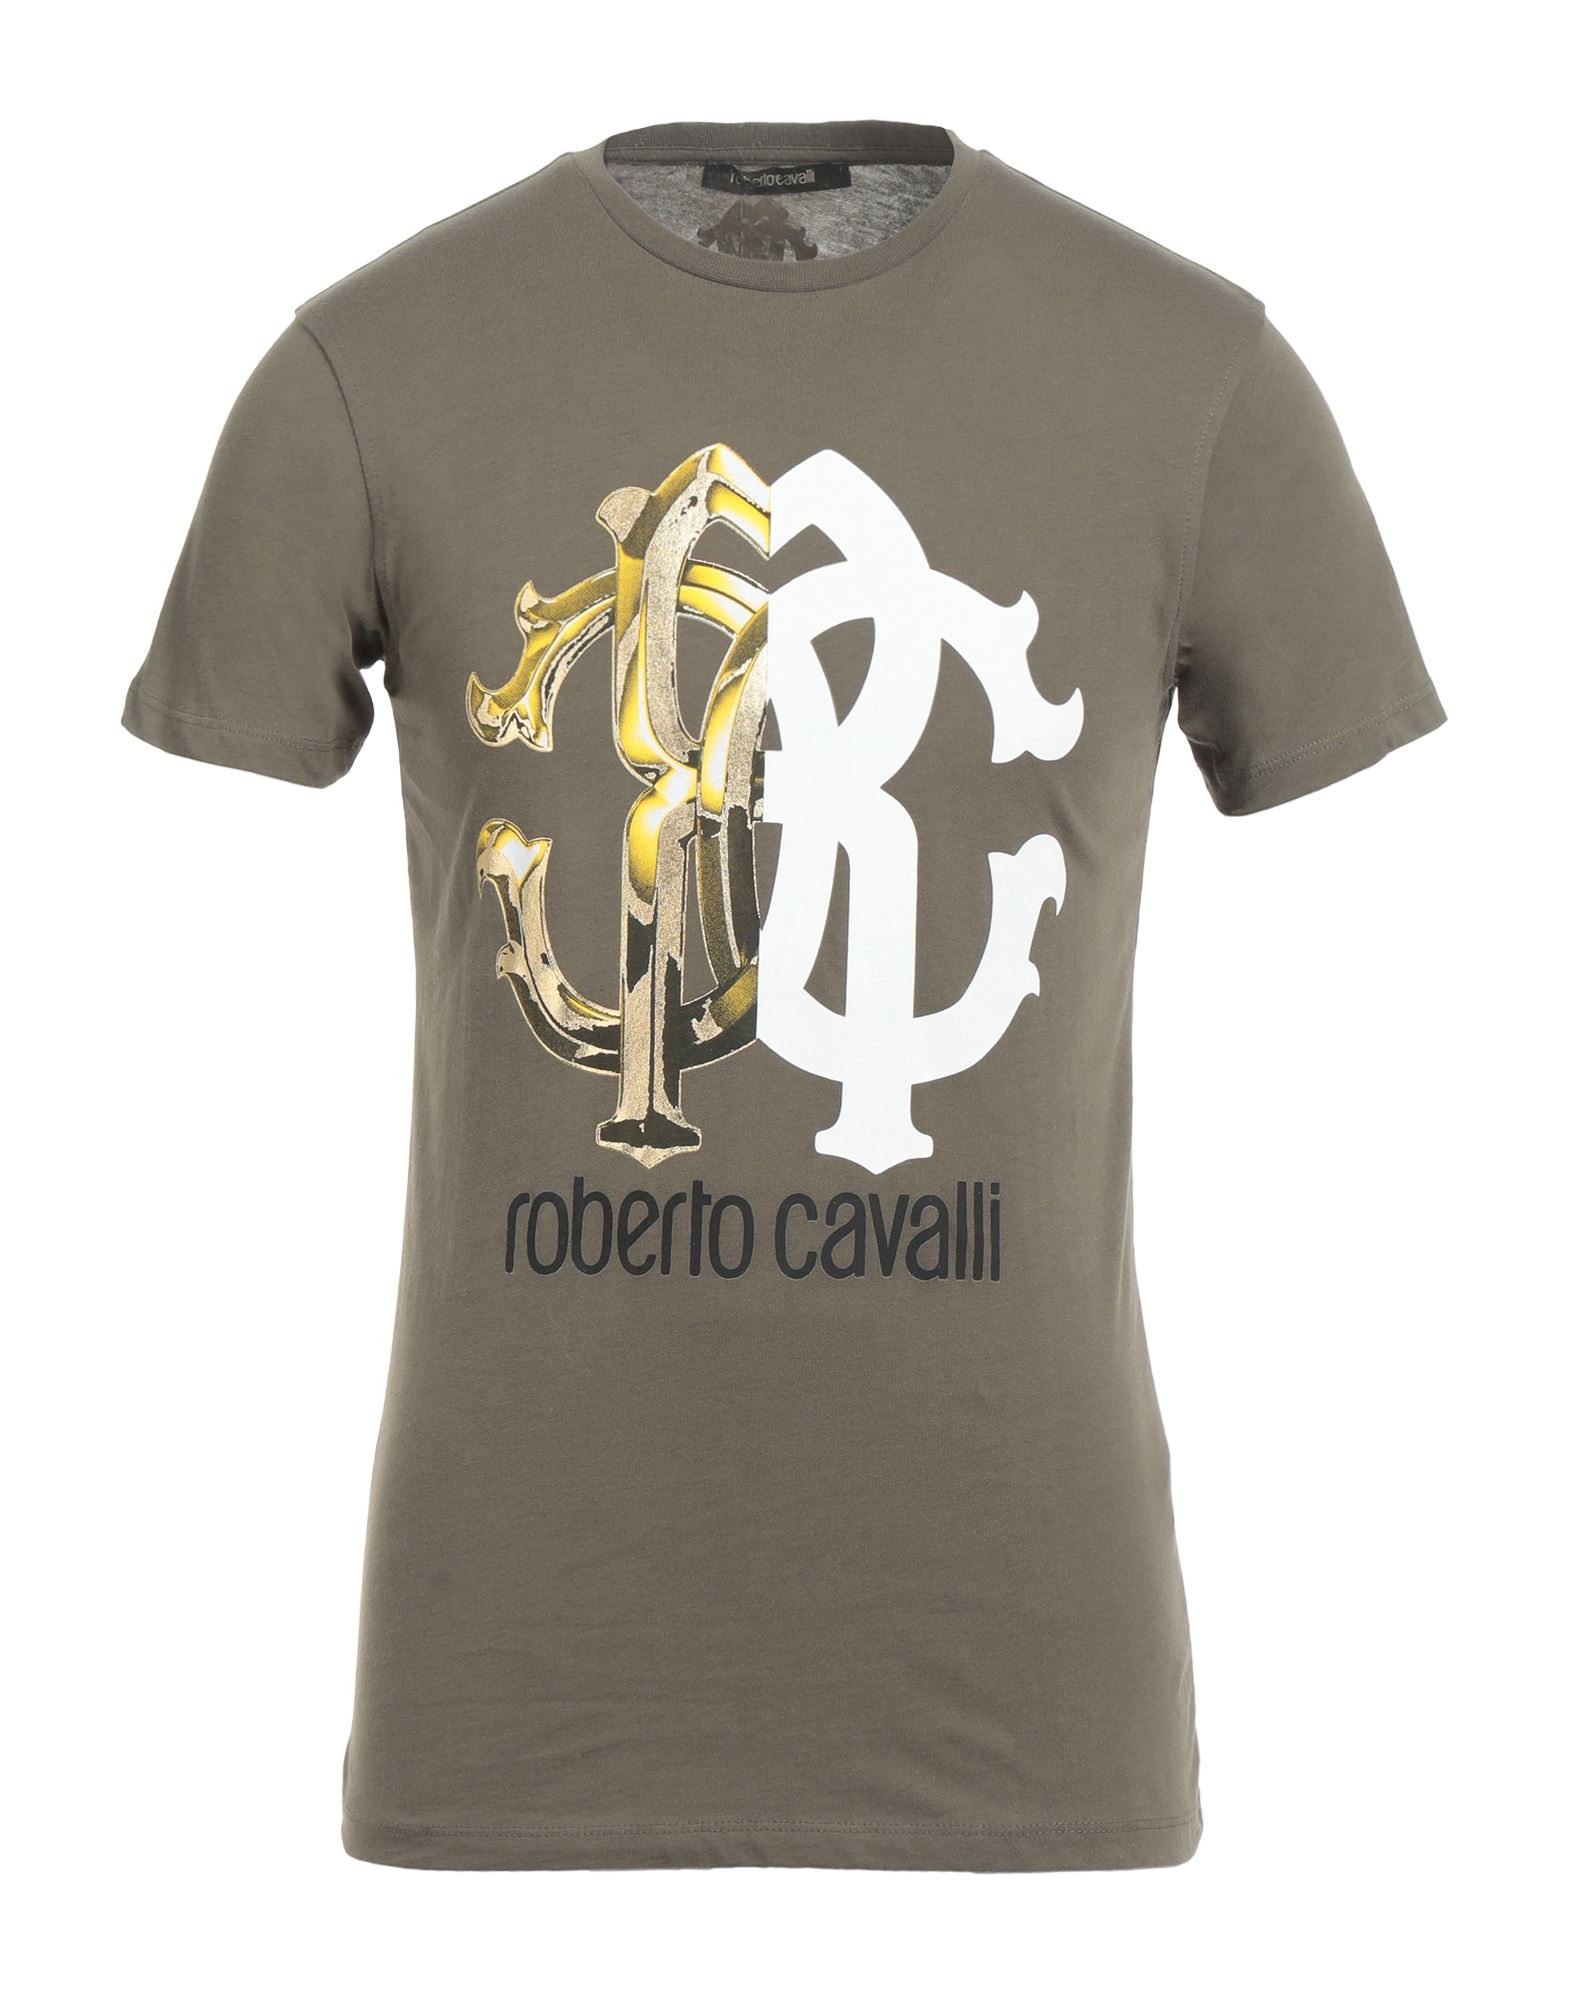 ROBERTO CAVALLI ロベルトカヴァリ Tシャツ トップス メンズ T-shirts